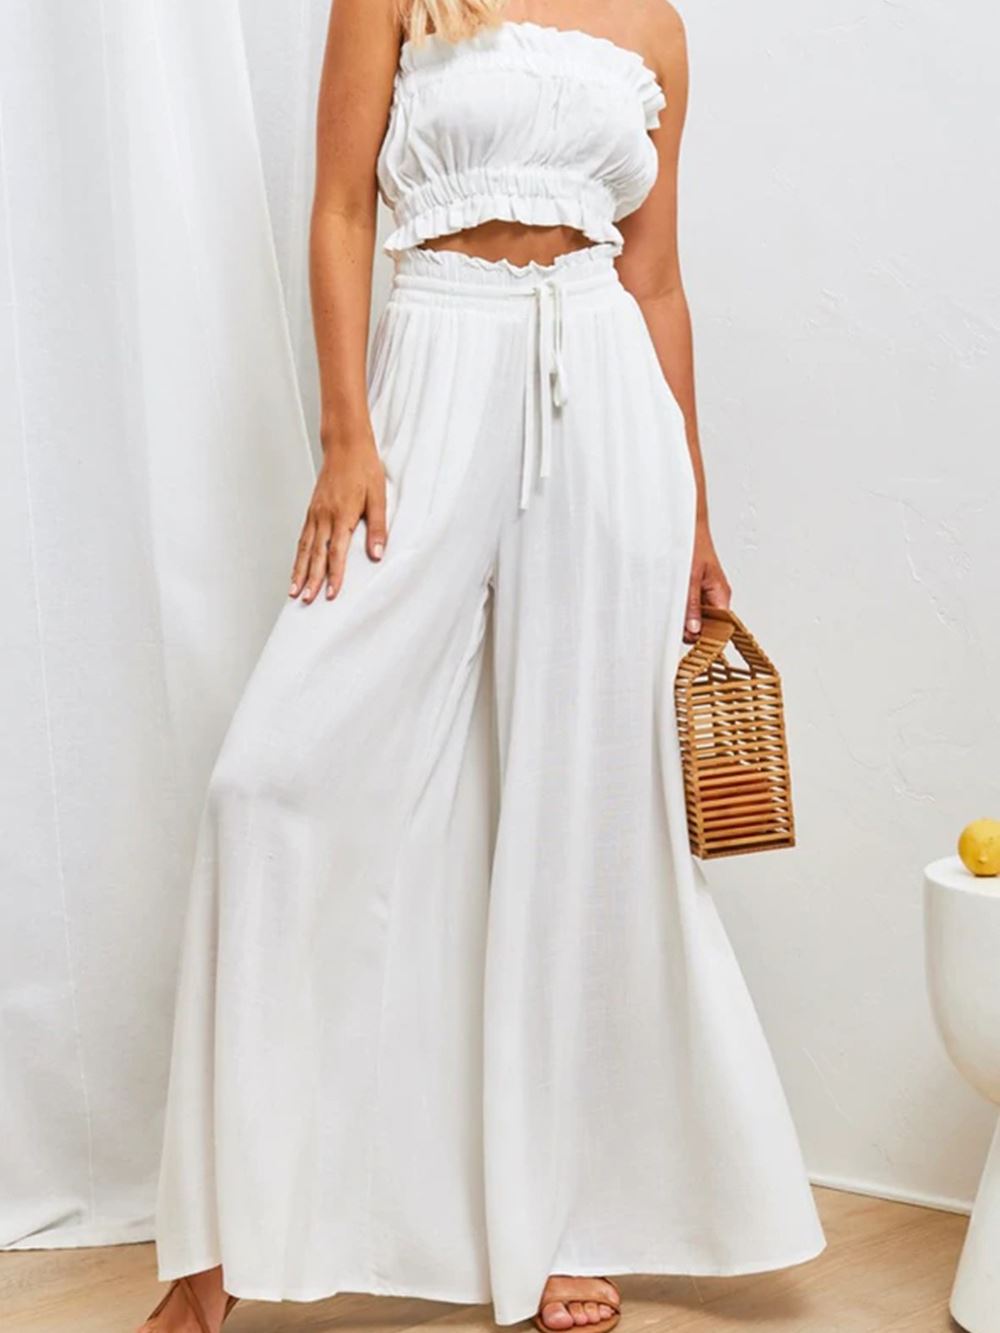 Pantalon large fluide femme pour l'été, couleur blanche, tendance et élégant, porté avec un haut assorti et un sac à main.